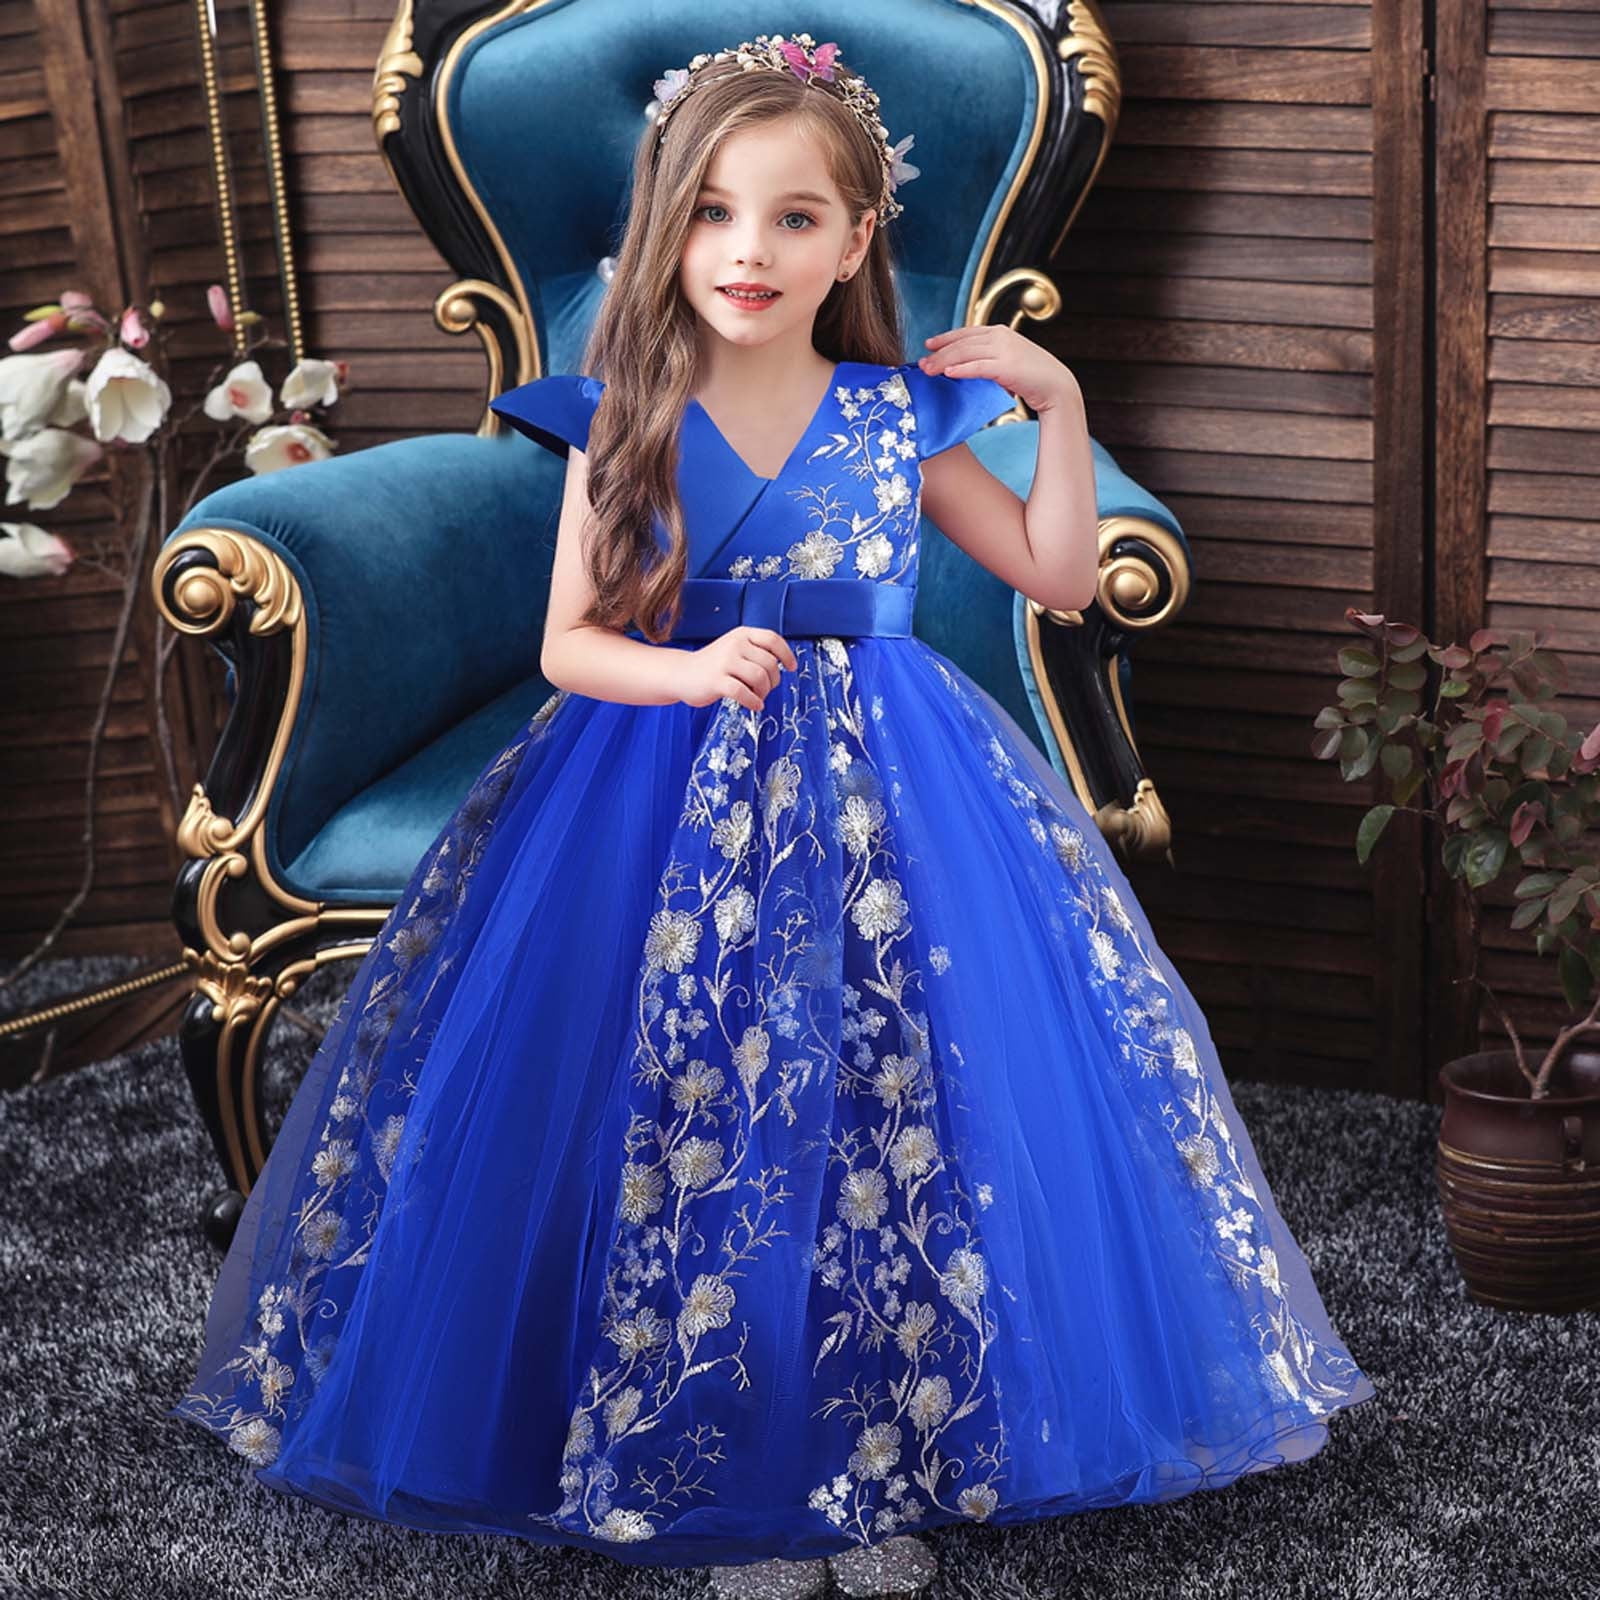 Berry Blue Evening Dress – Gillori